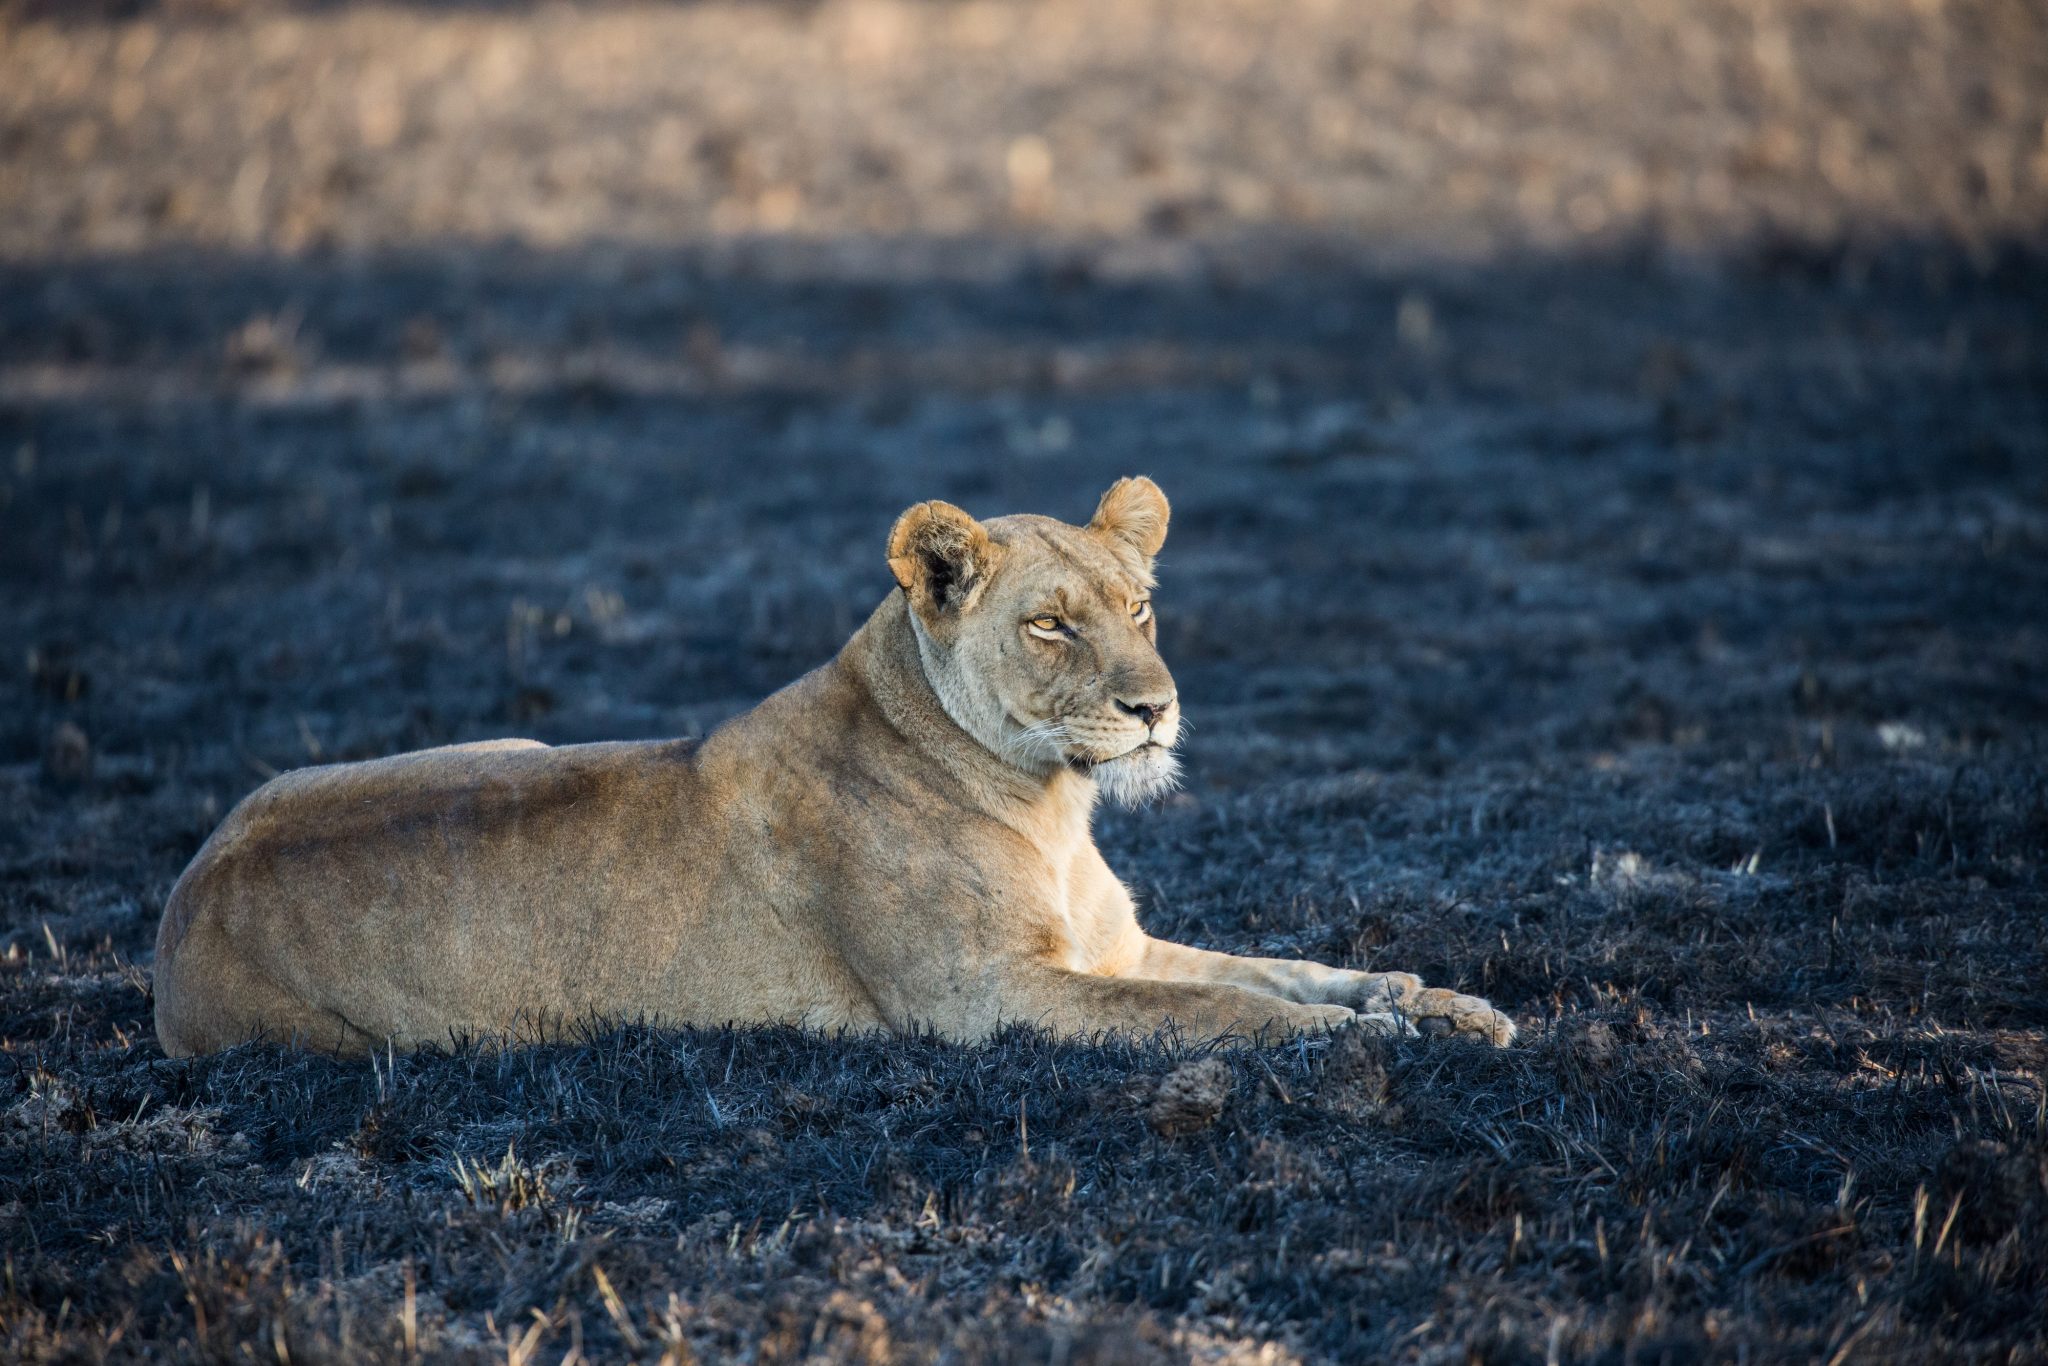 Lioness Zambia